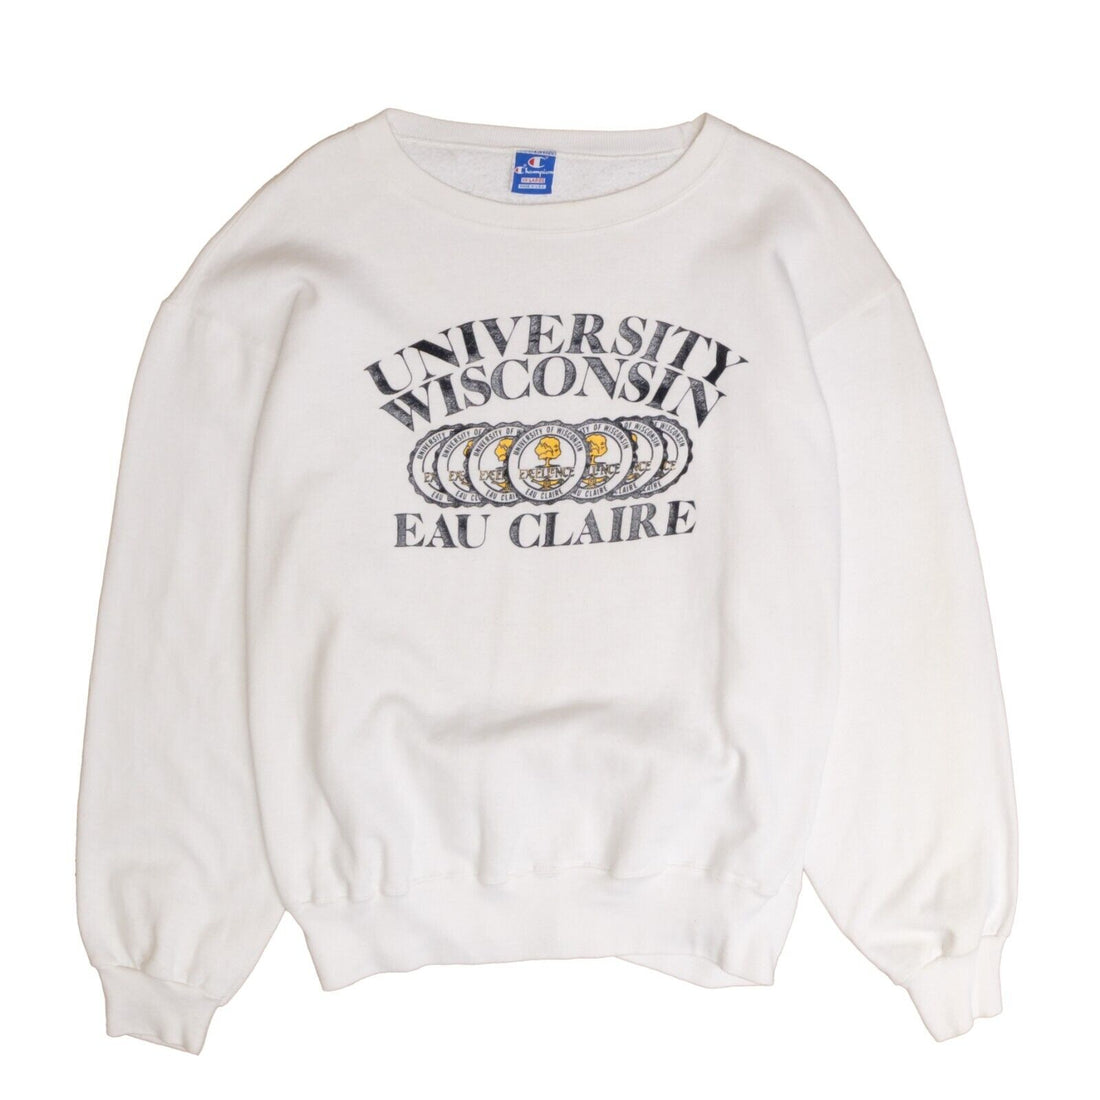 Vintage Wisconsin Eau Claire Champion Sweatshirt Crewneck Size 2XL 80s